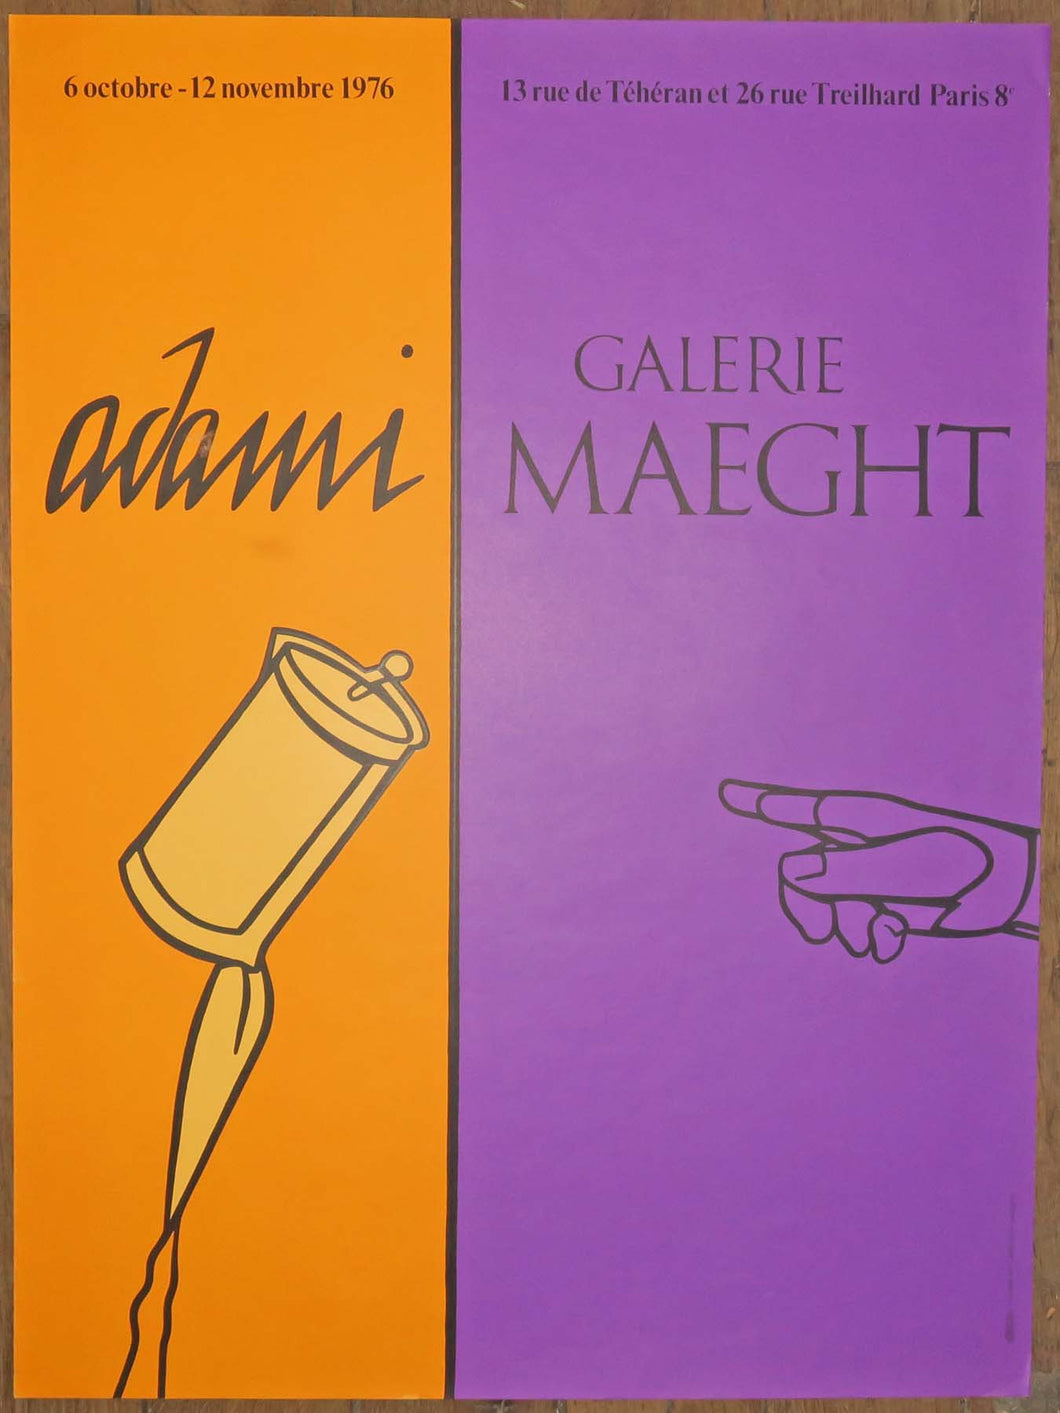 Affiche d'exposition pour la Galerie Maeght.